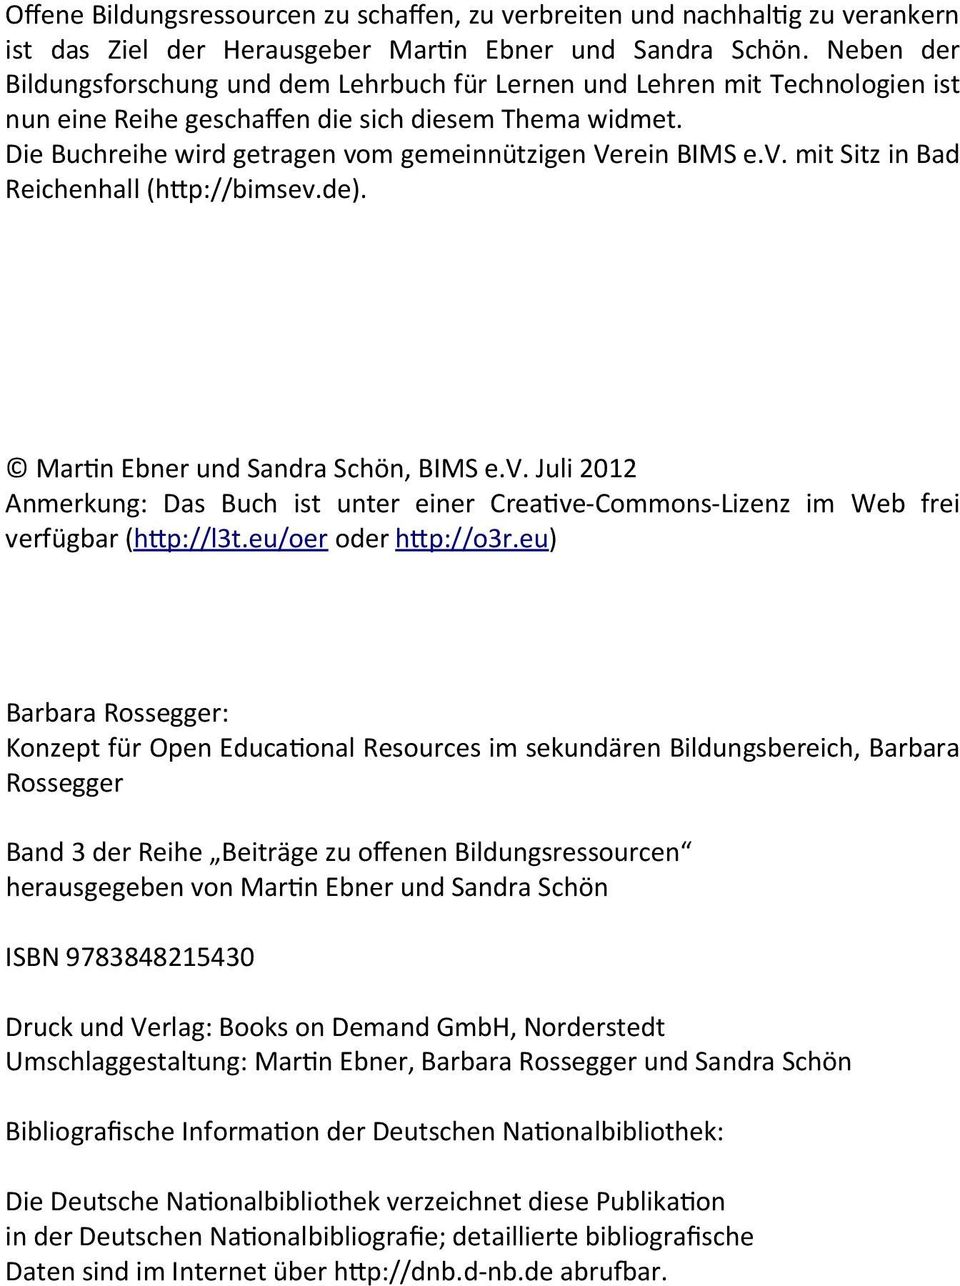 Die Buchreihe wird getragen vom gemeinnützigen Verein BIMS e.v. mit Sitz in Bad Reichenhall (h/p://bimsev.de). Marn Ebner und Sandra Schön, BIMS e.v. Juli 2012 Anmerkung: Das Buch ist unter einer Creave-Commons-Lizenz im Web frei verfügbar (h/p://l3t.